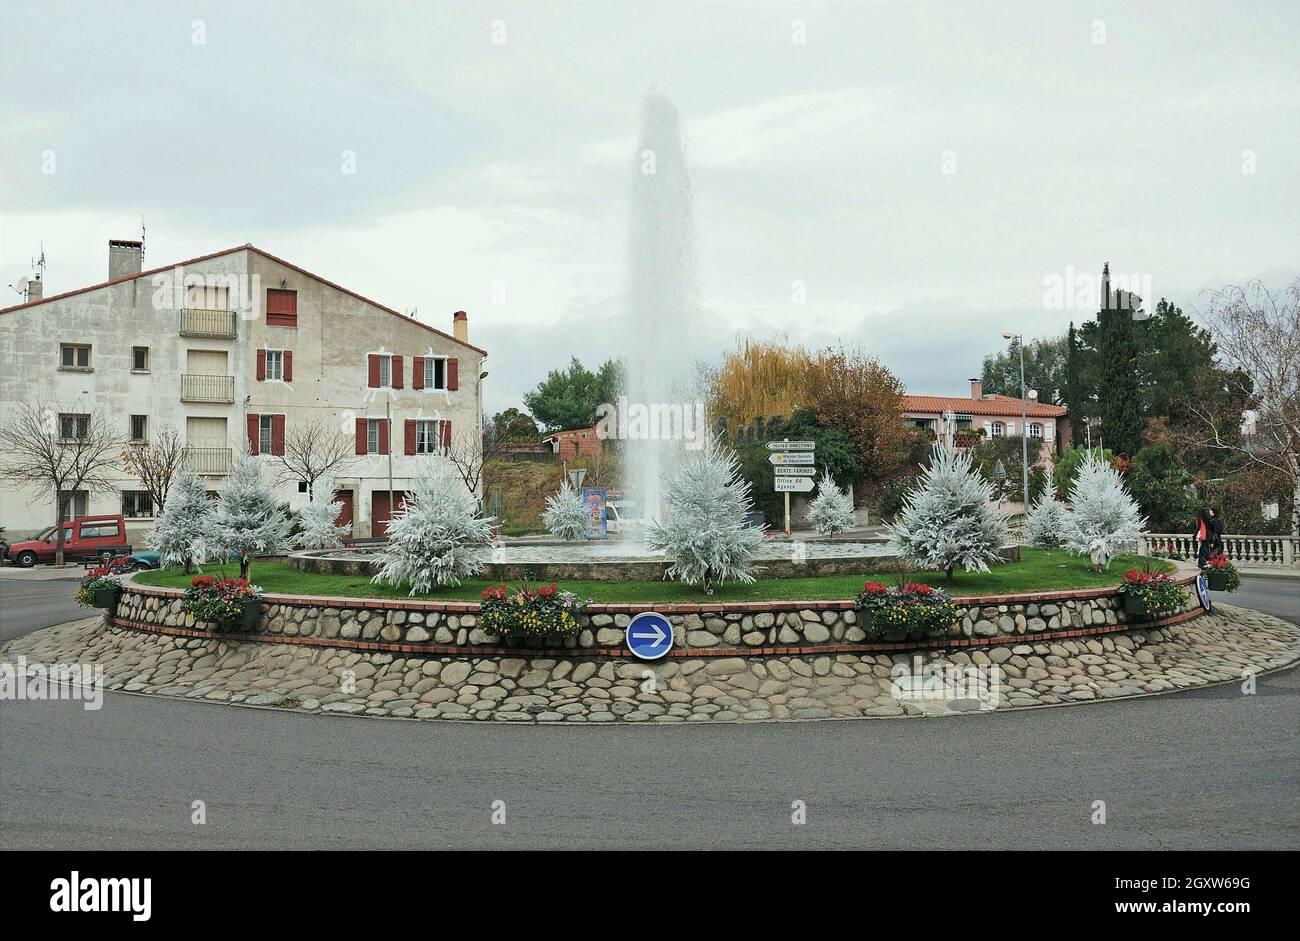 La ville de Céret est située dans l'est des Pyrénées, dans la région de l'Occitania, en France. Banque D'Images